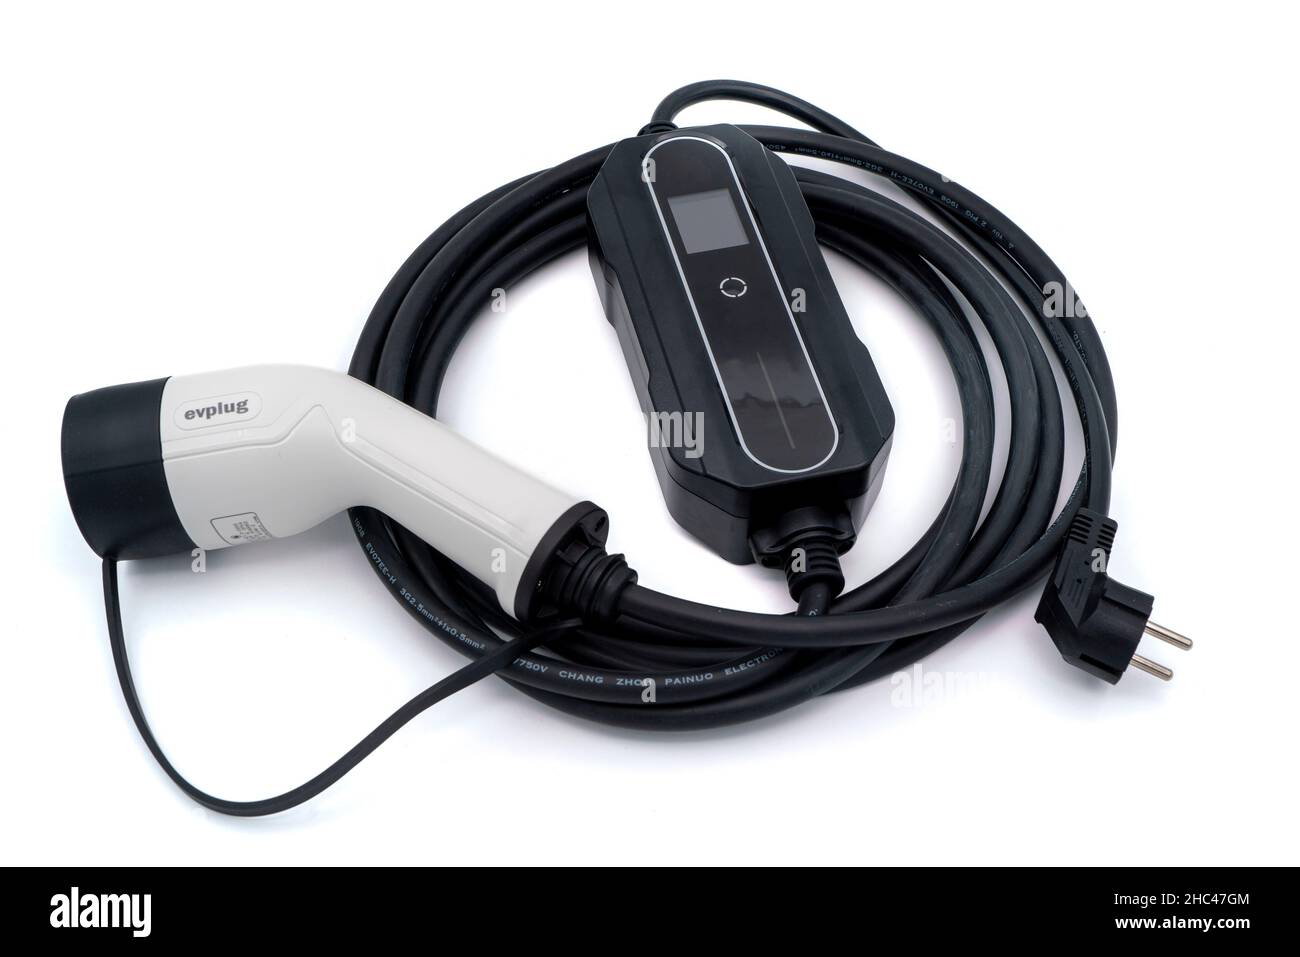 Câble de charge pour véhicule électrique - chargeur de câble de type 2 - coupé isolé sur fond blanc Banque D'Images